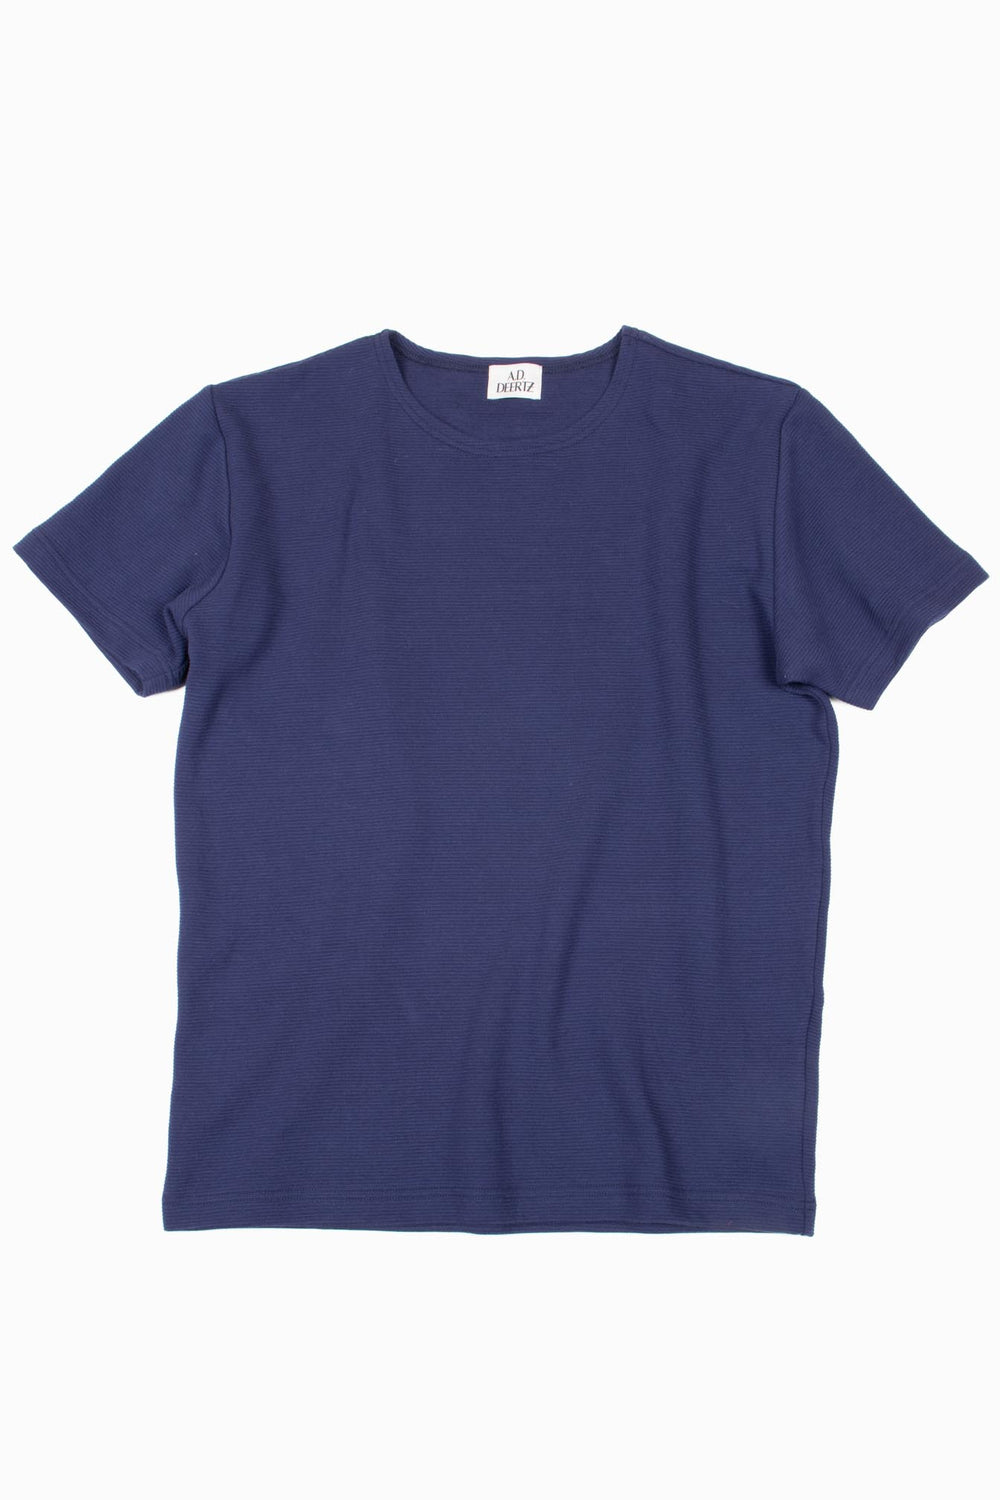 Grass T-Shirt blue